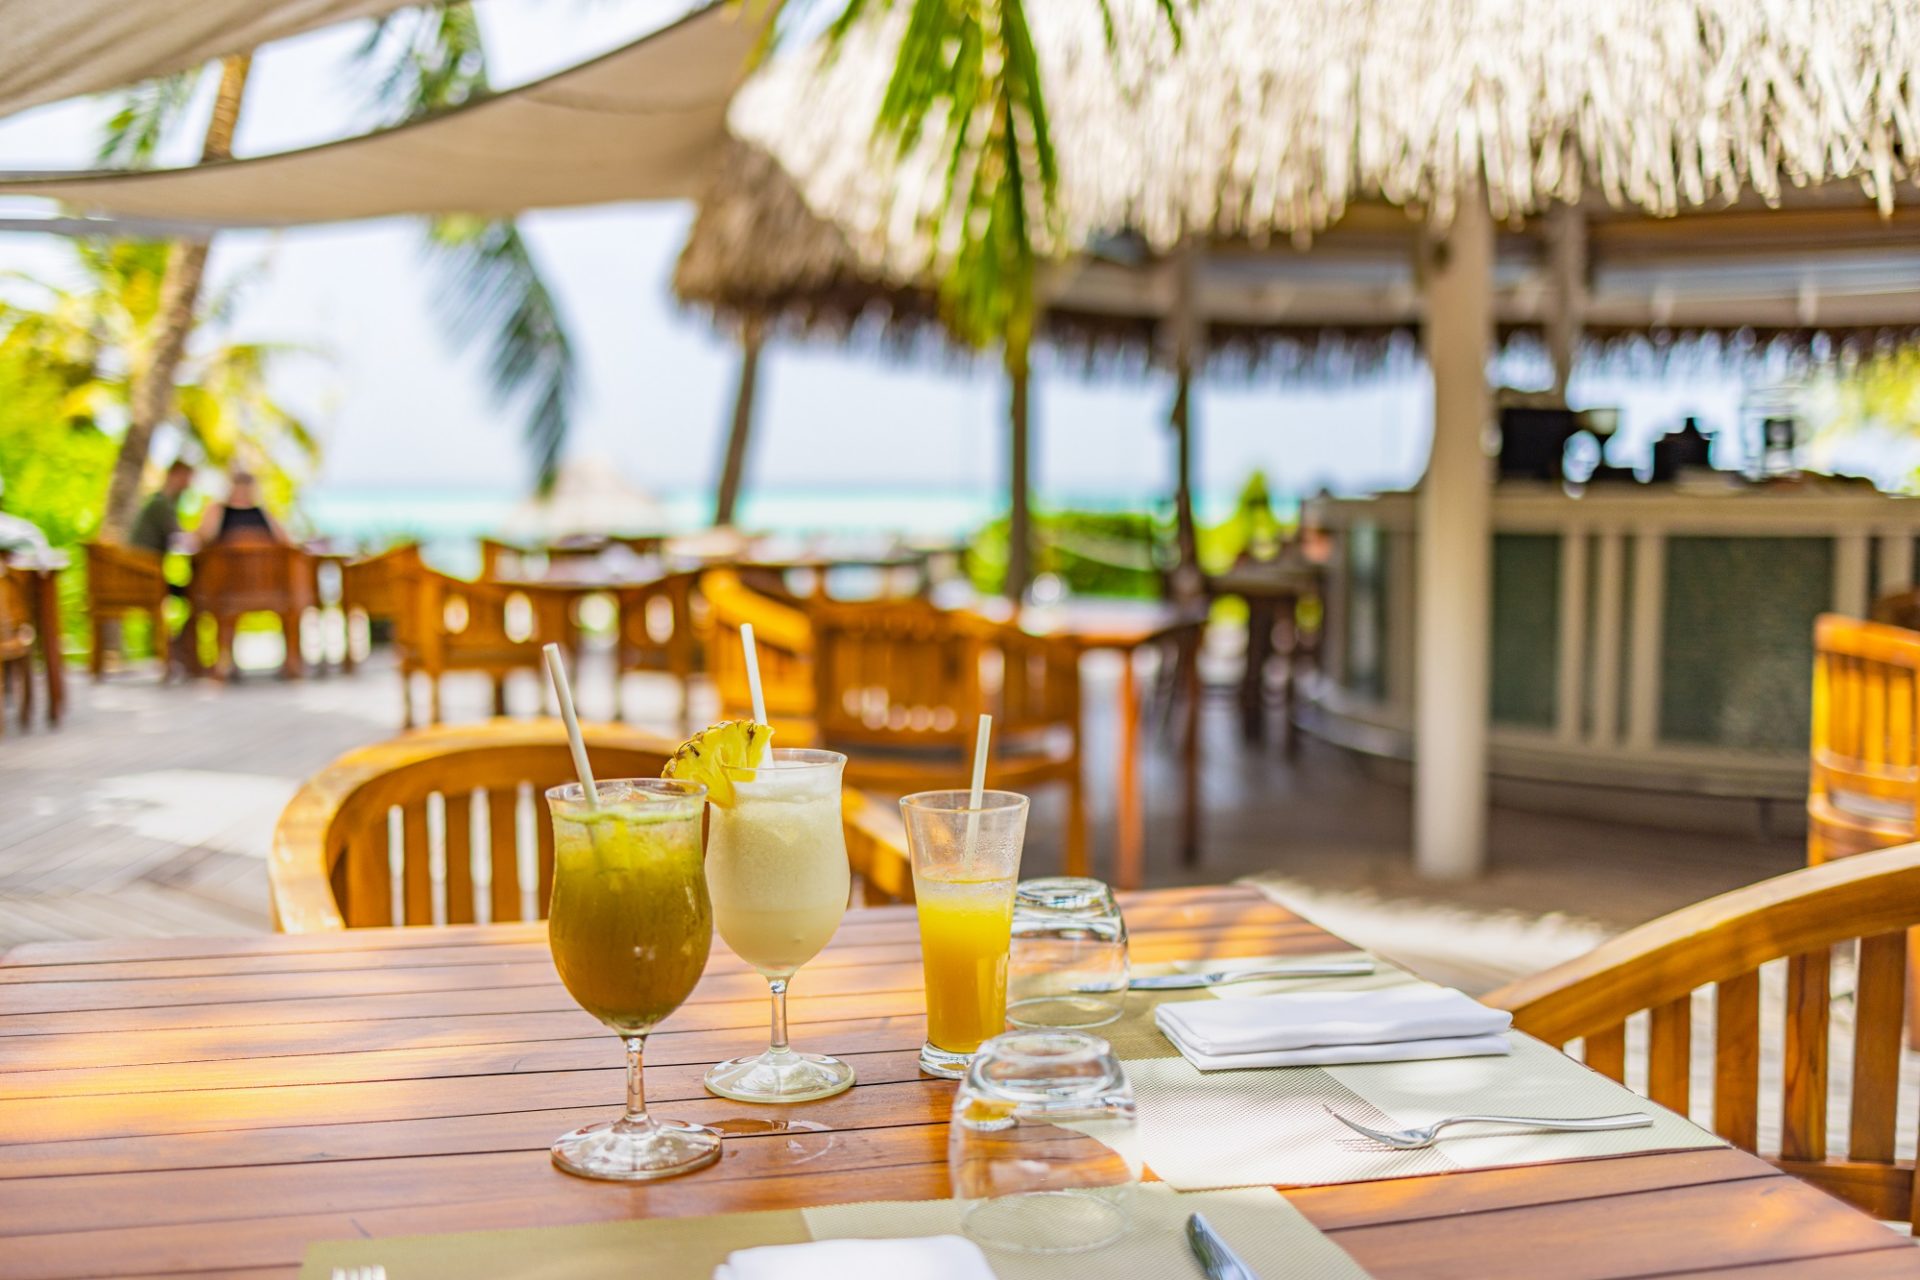 al-aire-libre-restaurante-tropical-bar-mesas-madera-sillas-palmeras-cocteles-playa-lujo